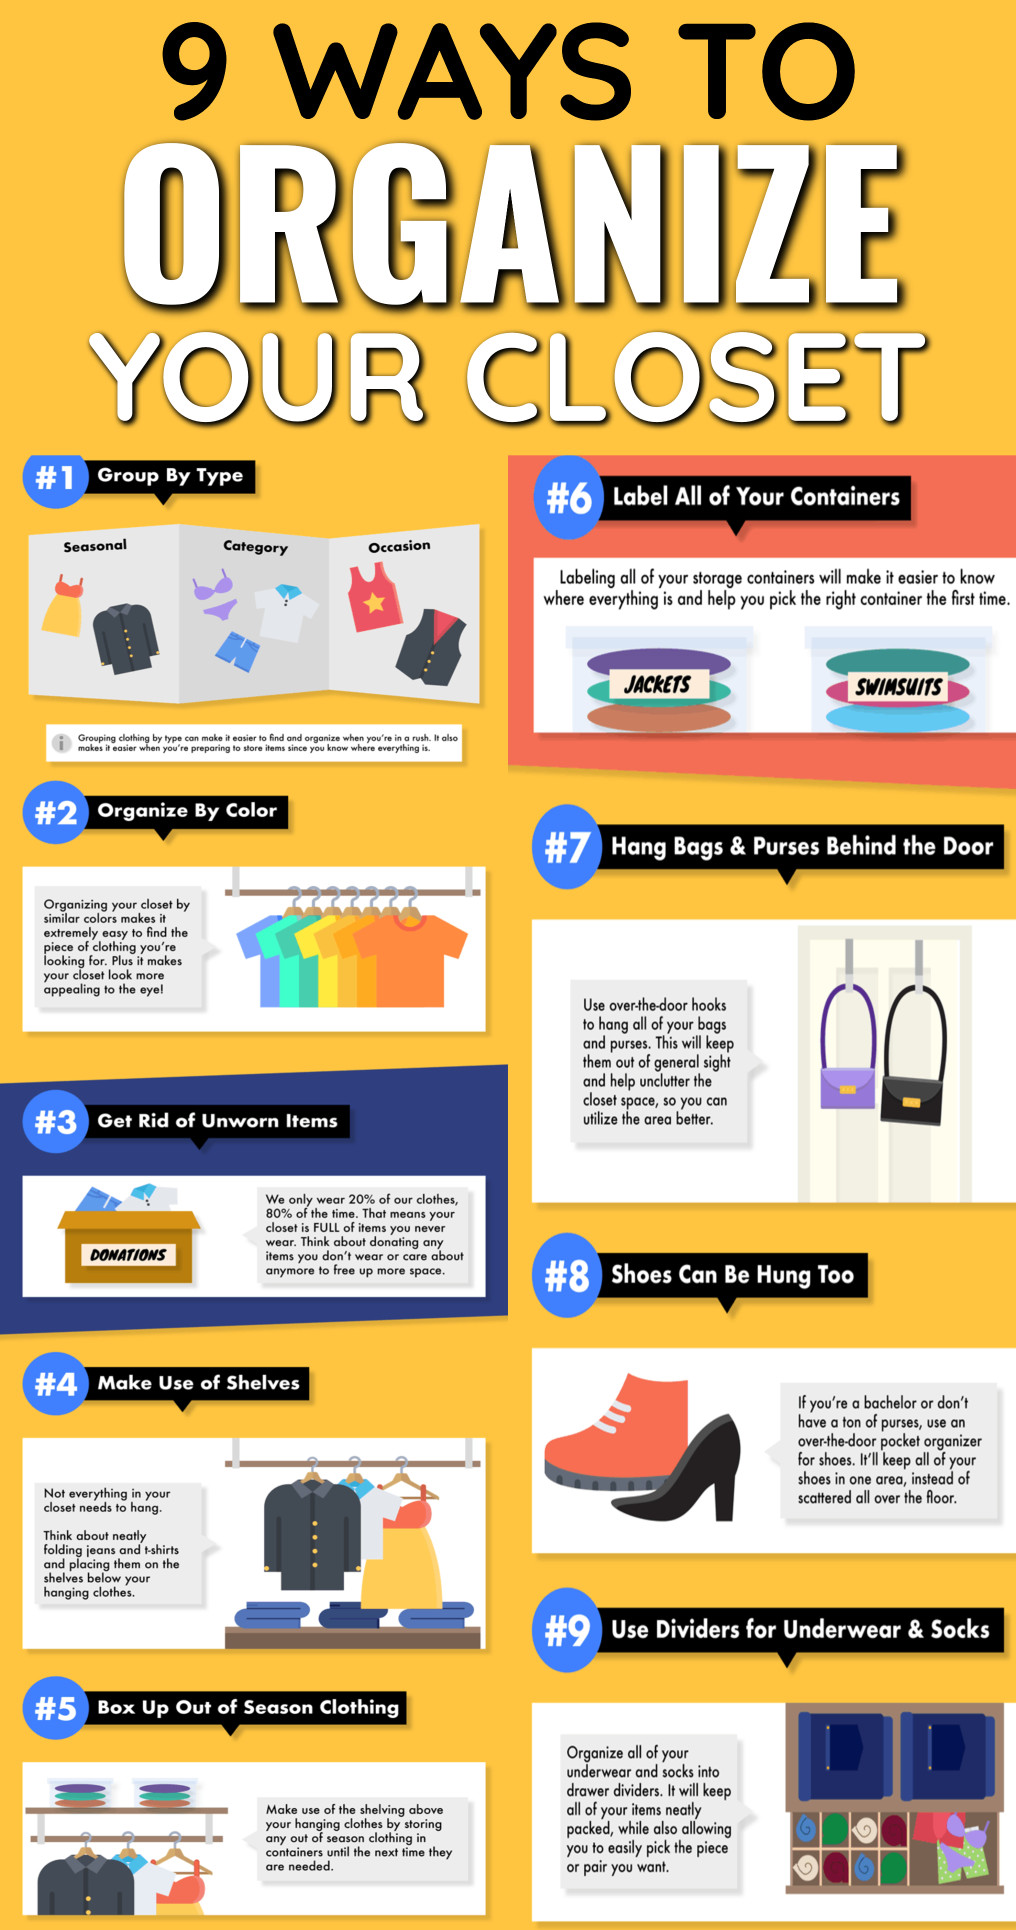 9 ways to organize your closet